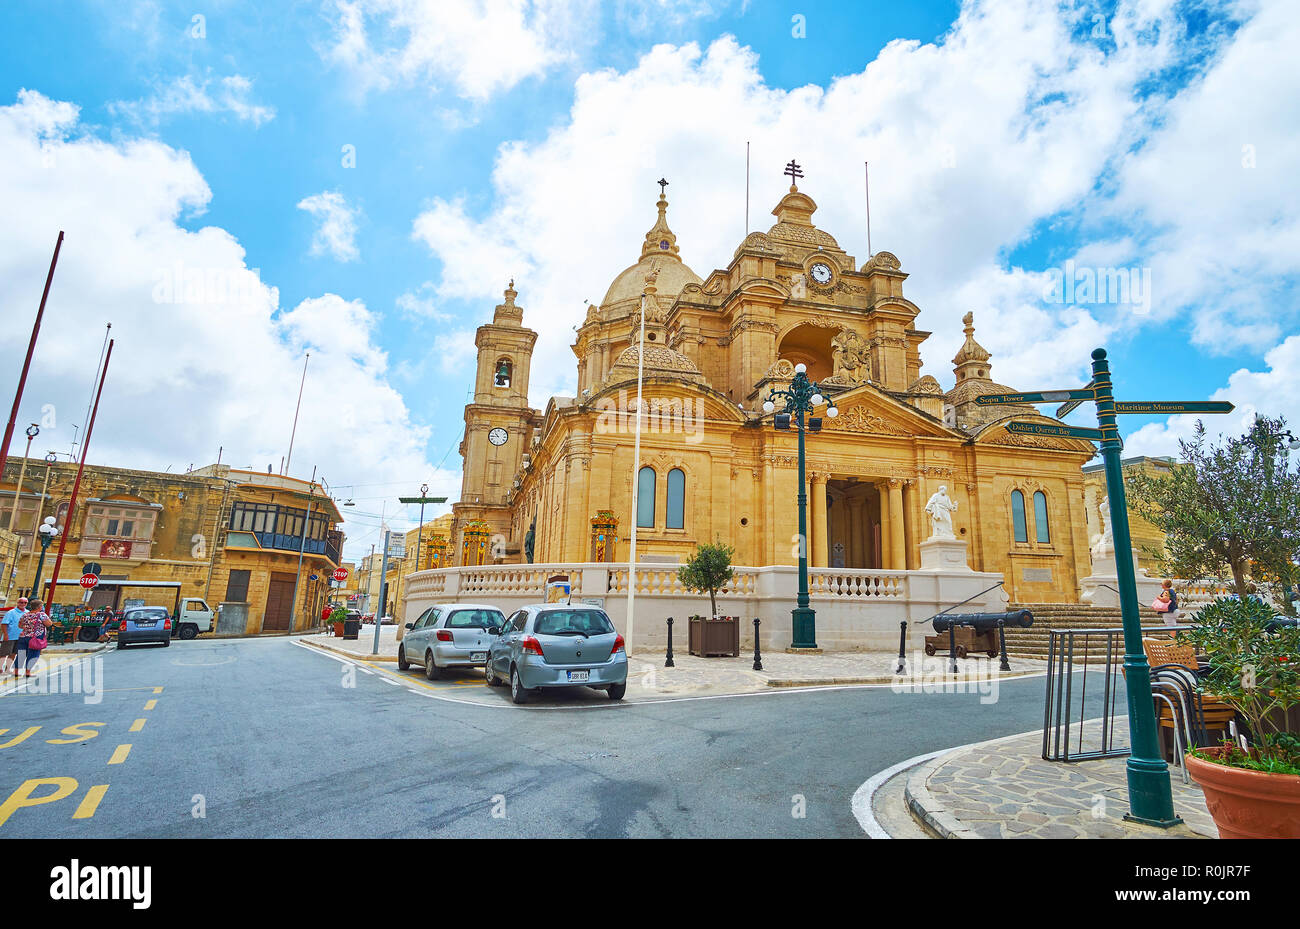 NADUR, MALTE - 15 juin 2018 : La Basilique de Saint Pierre et Paul est l'une des plus belles églises de l'île de Gozo et parfait exemple de cu Maltais Banque D'Images